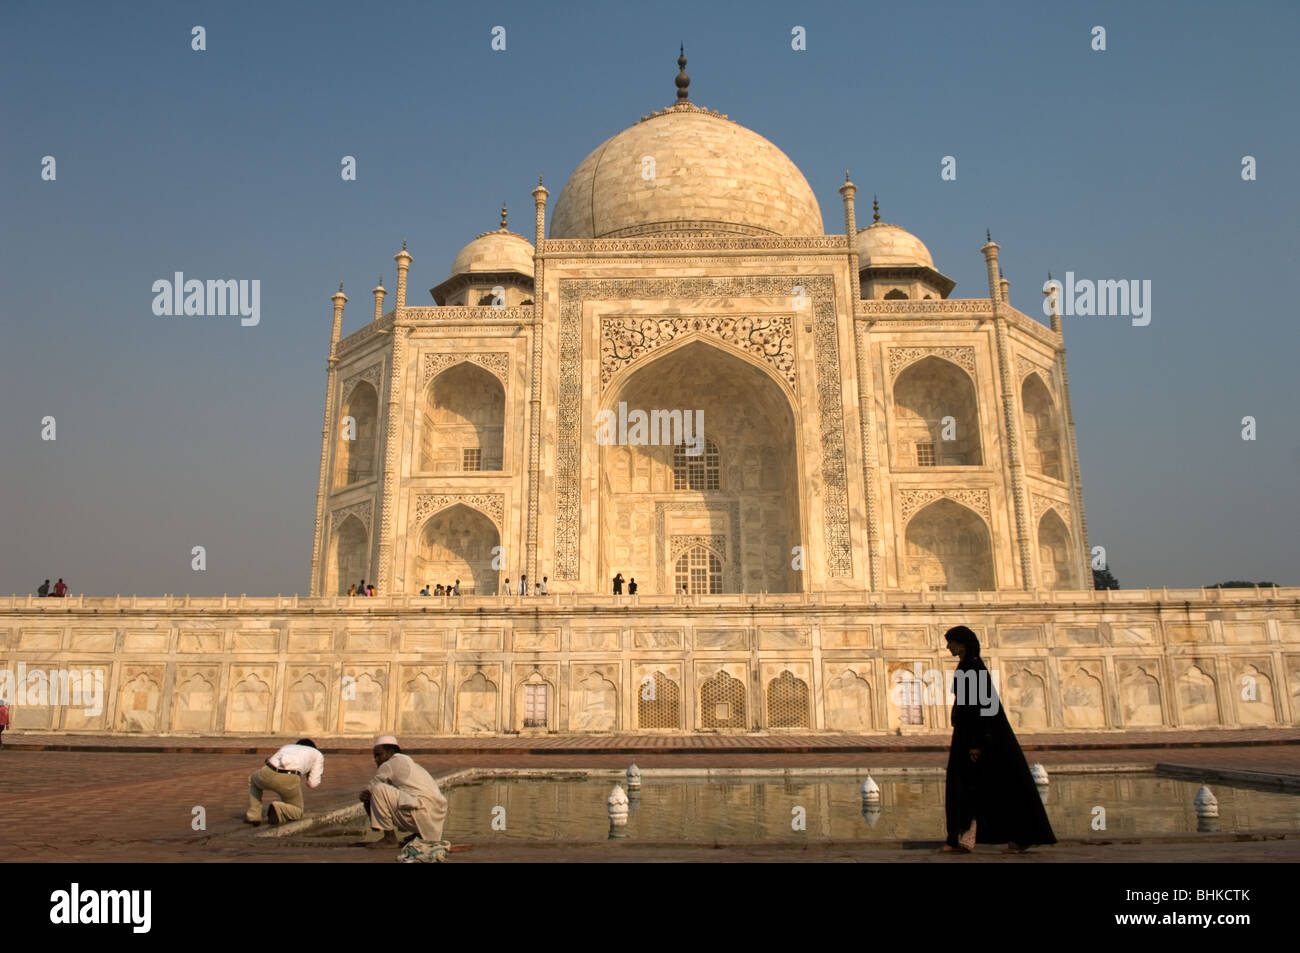 El Taj Mahal, una de las maravillas arquitectónicas del mundo, Agra, Uttar Pradesh, India Foto de stock